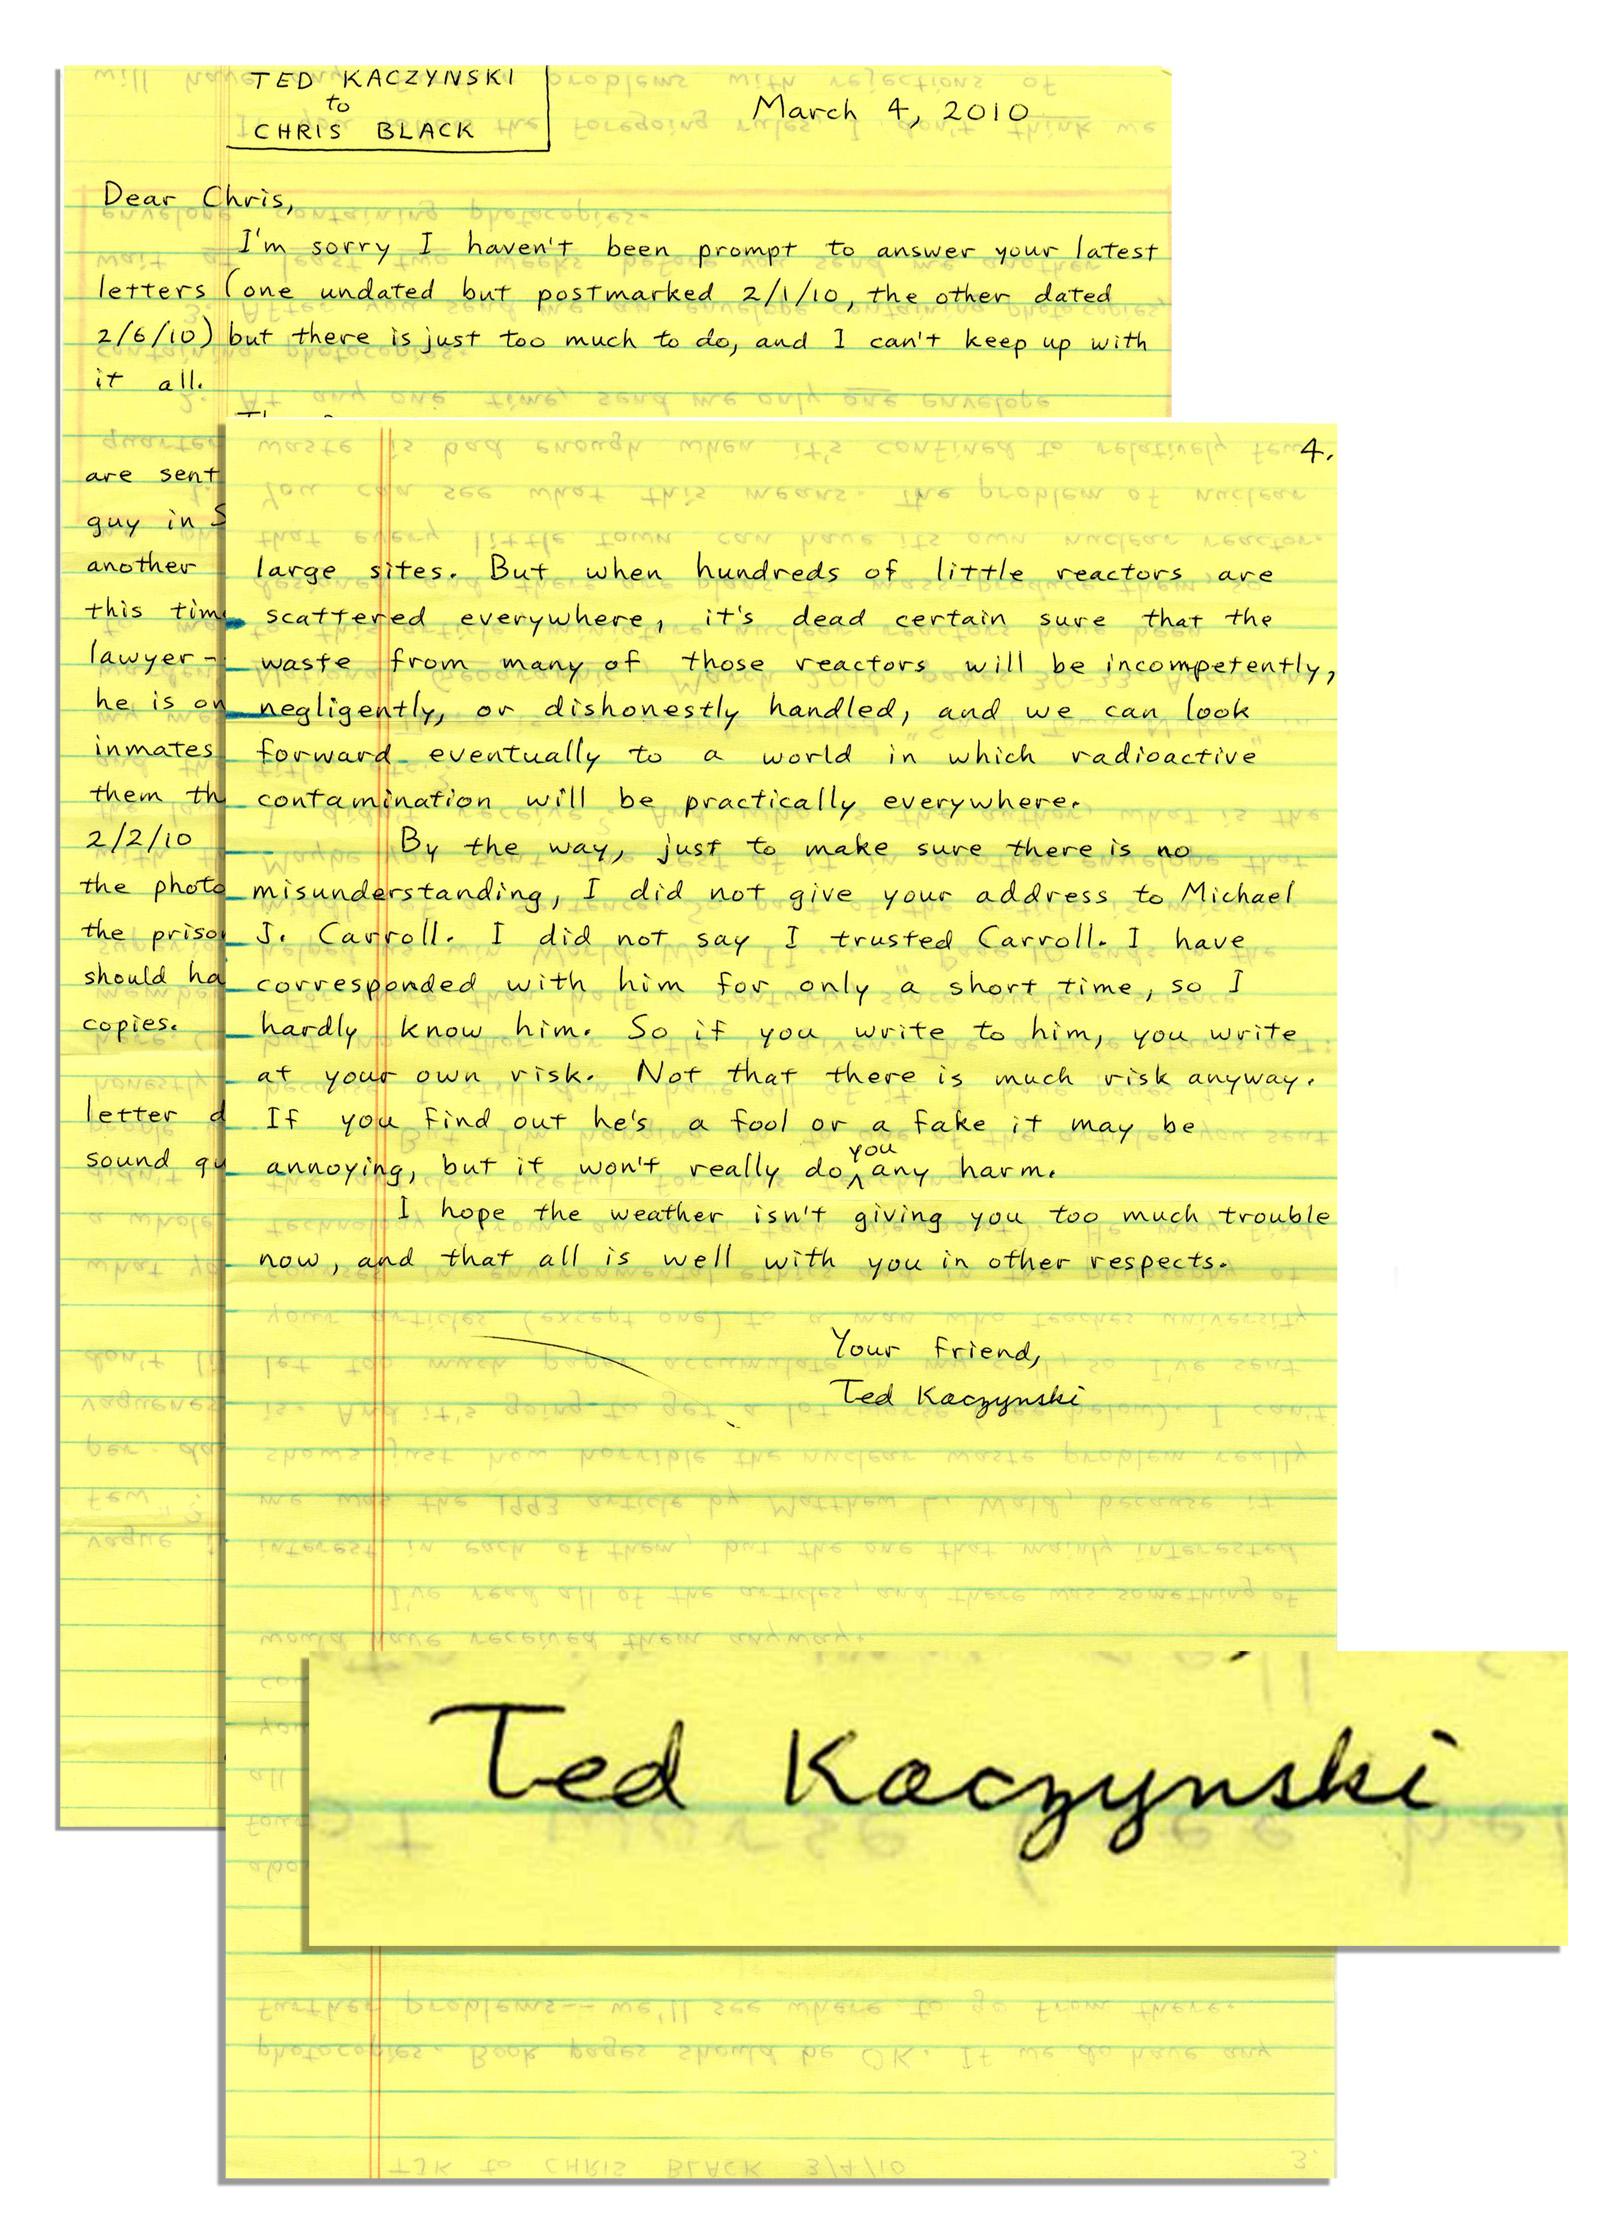 t-k-ted-kaczynski-s-correspondence-with-chris-blac-1.jpg